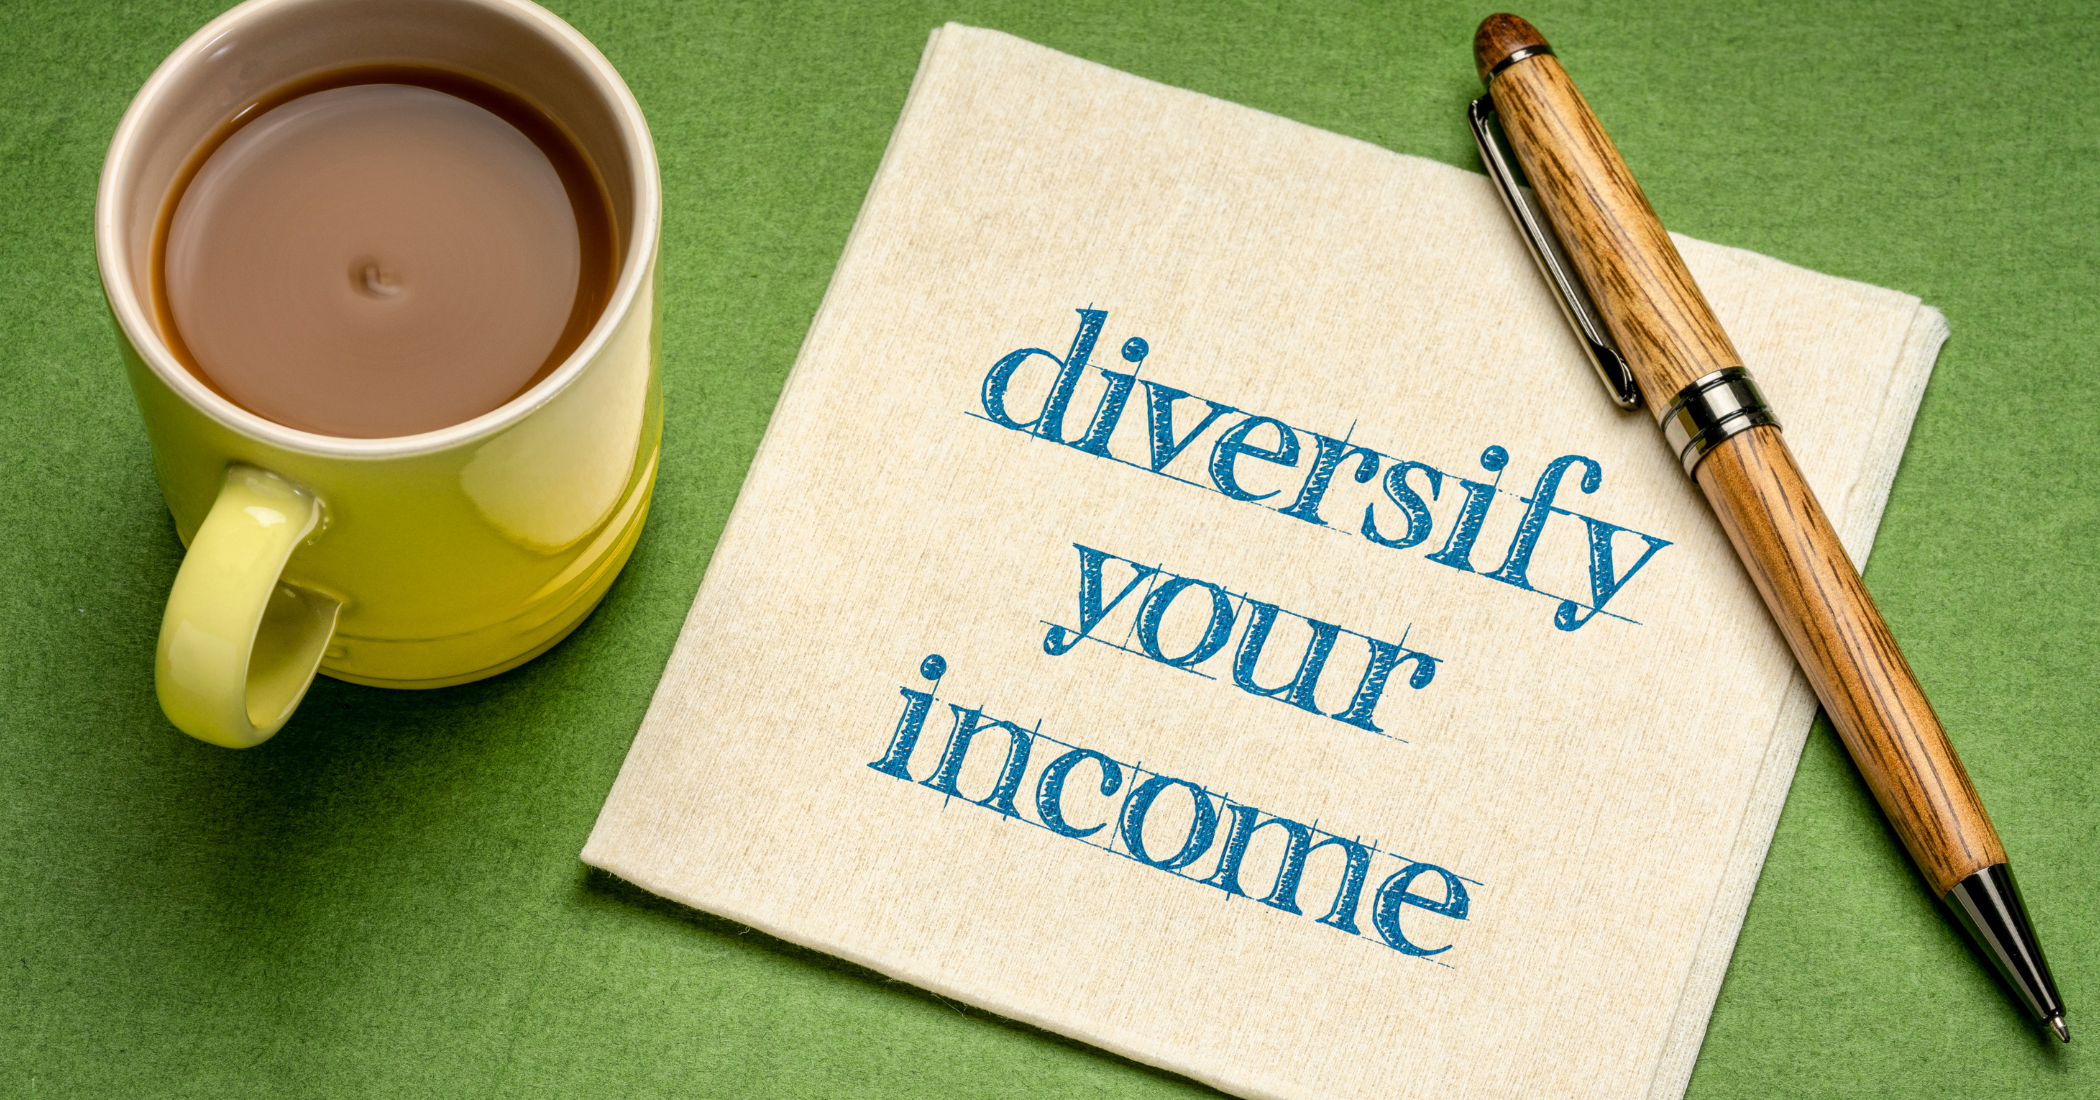 Income diversification